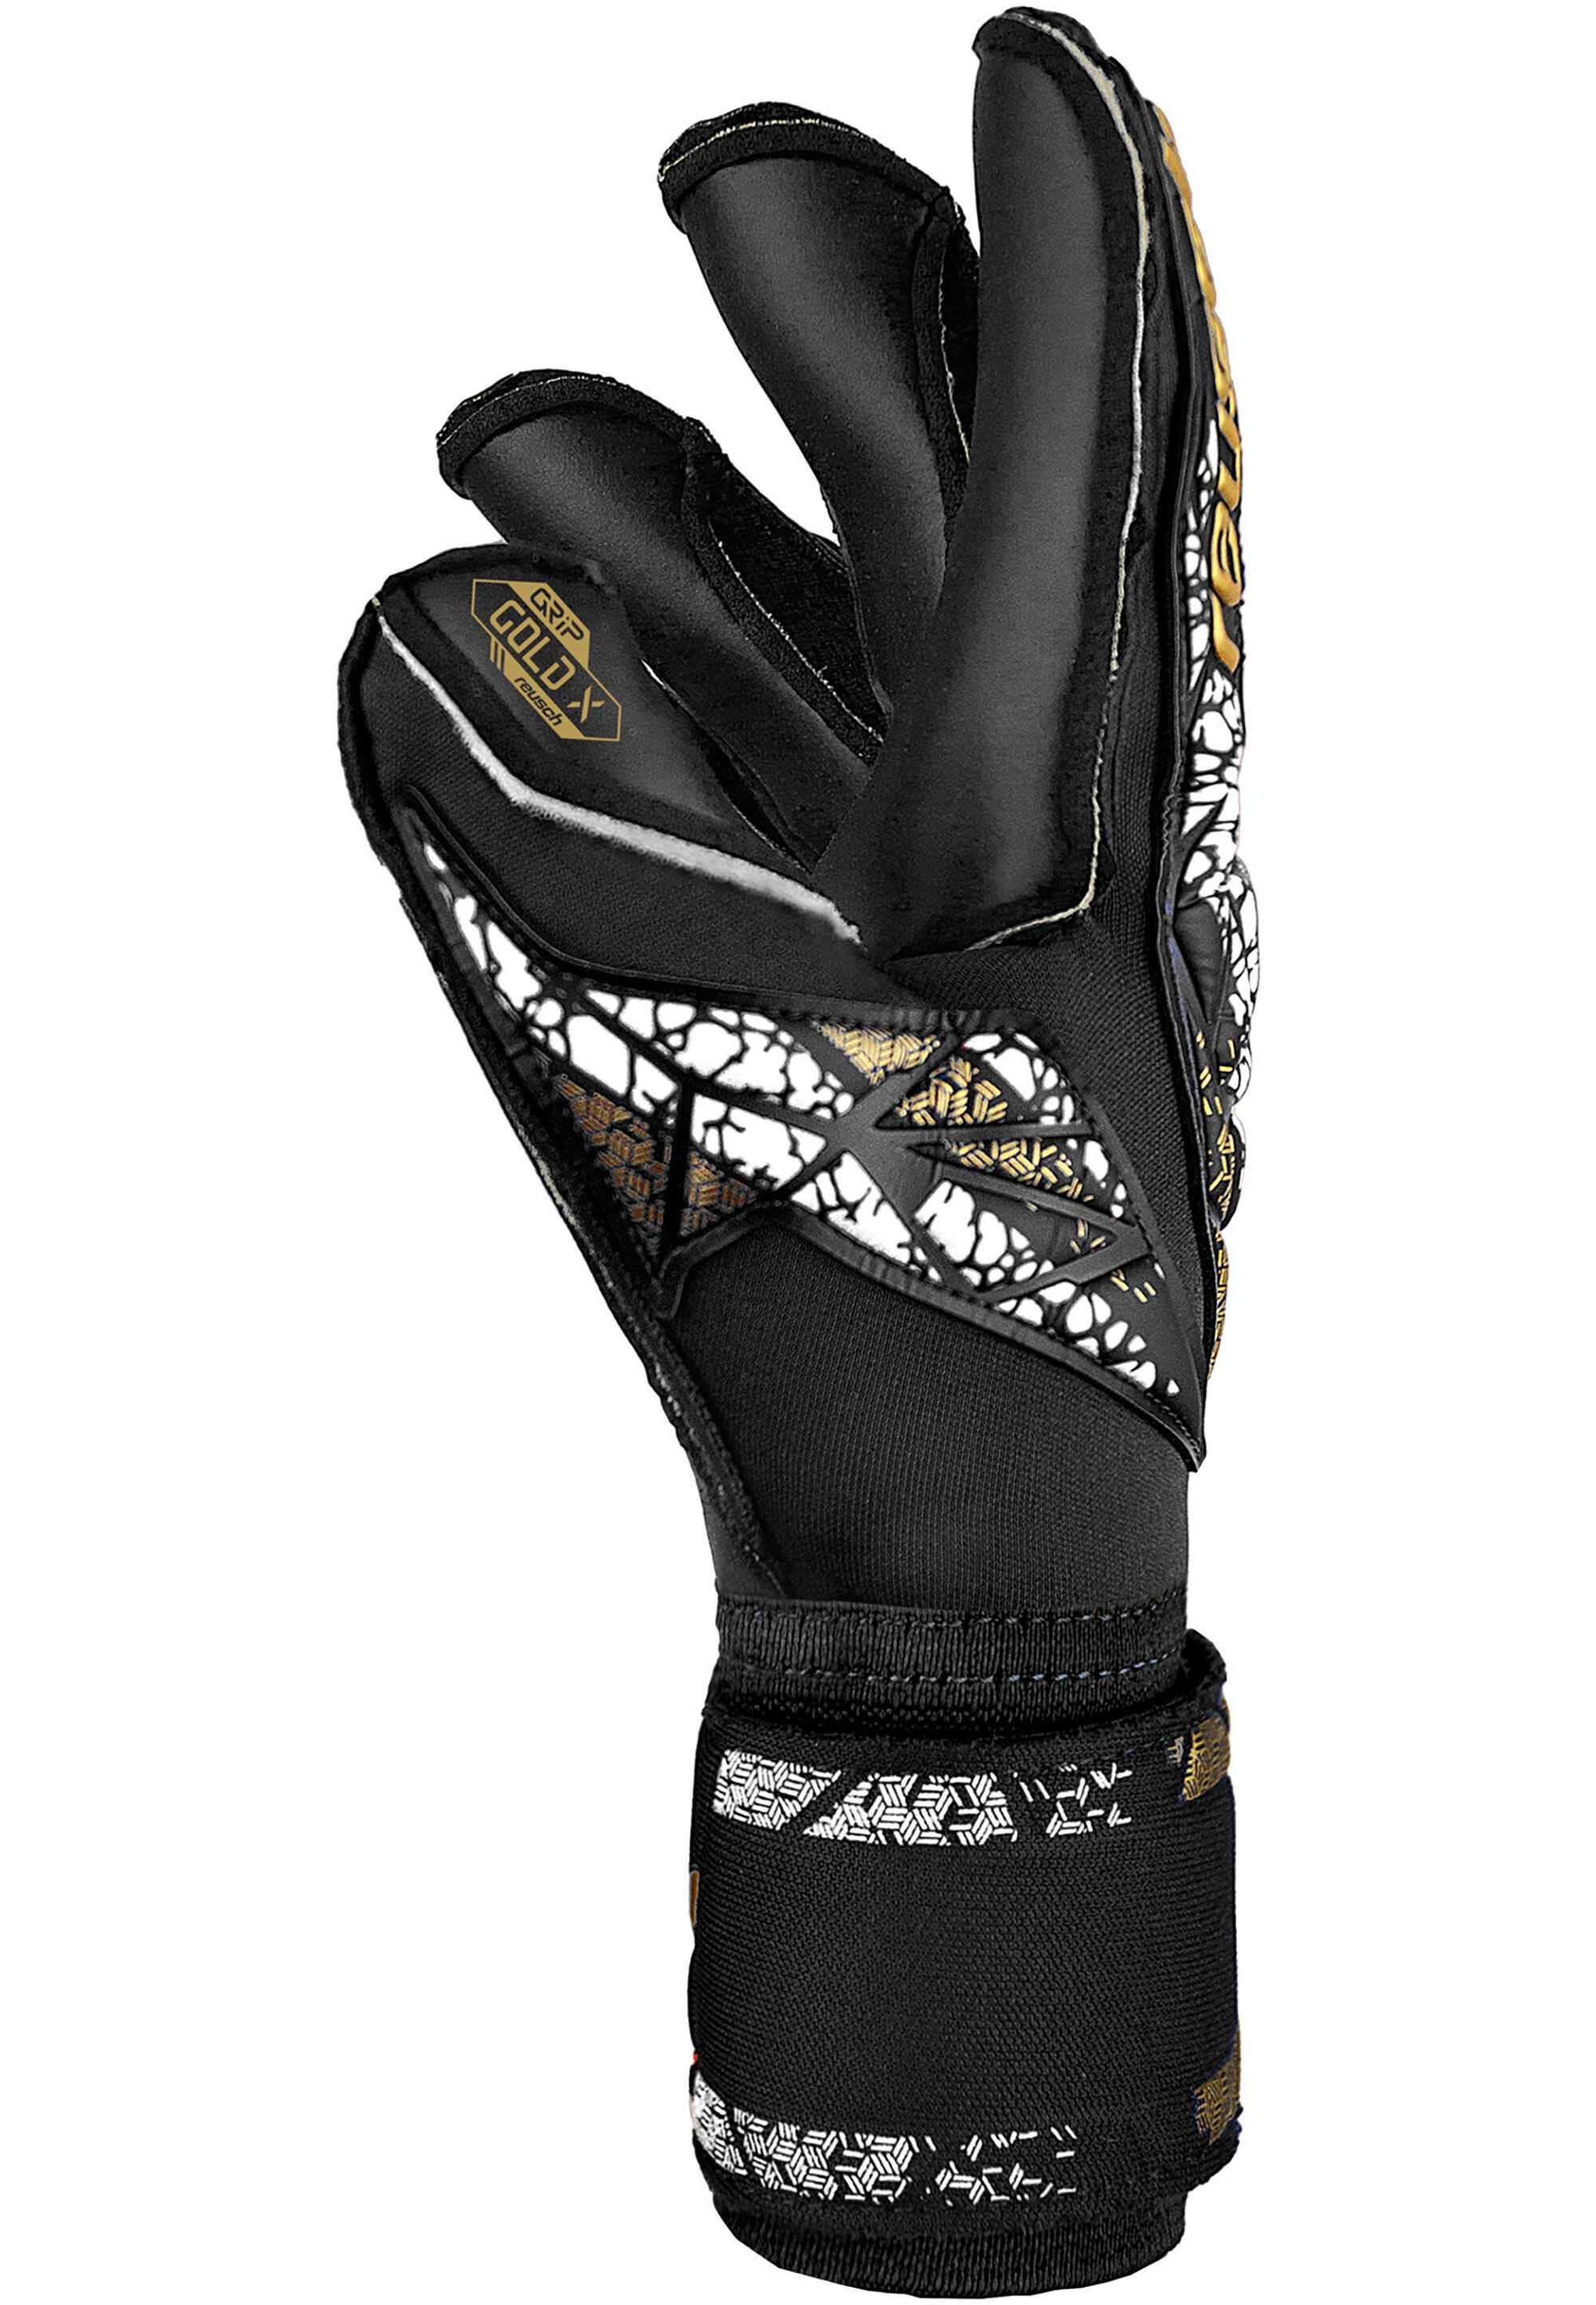 Reusch Attrakt Gold X Evolution Cut Finger Support Goalkeeper Gloves 3/7